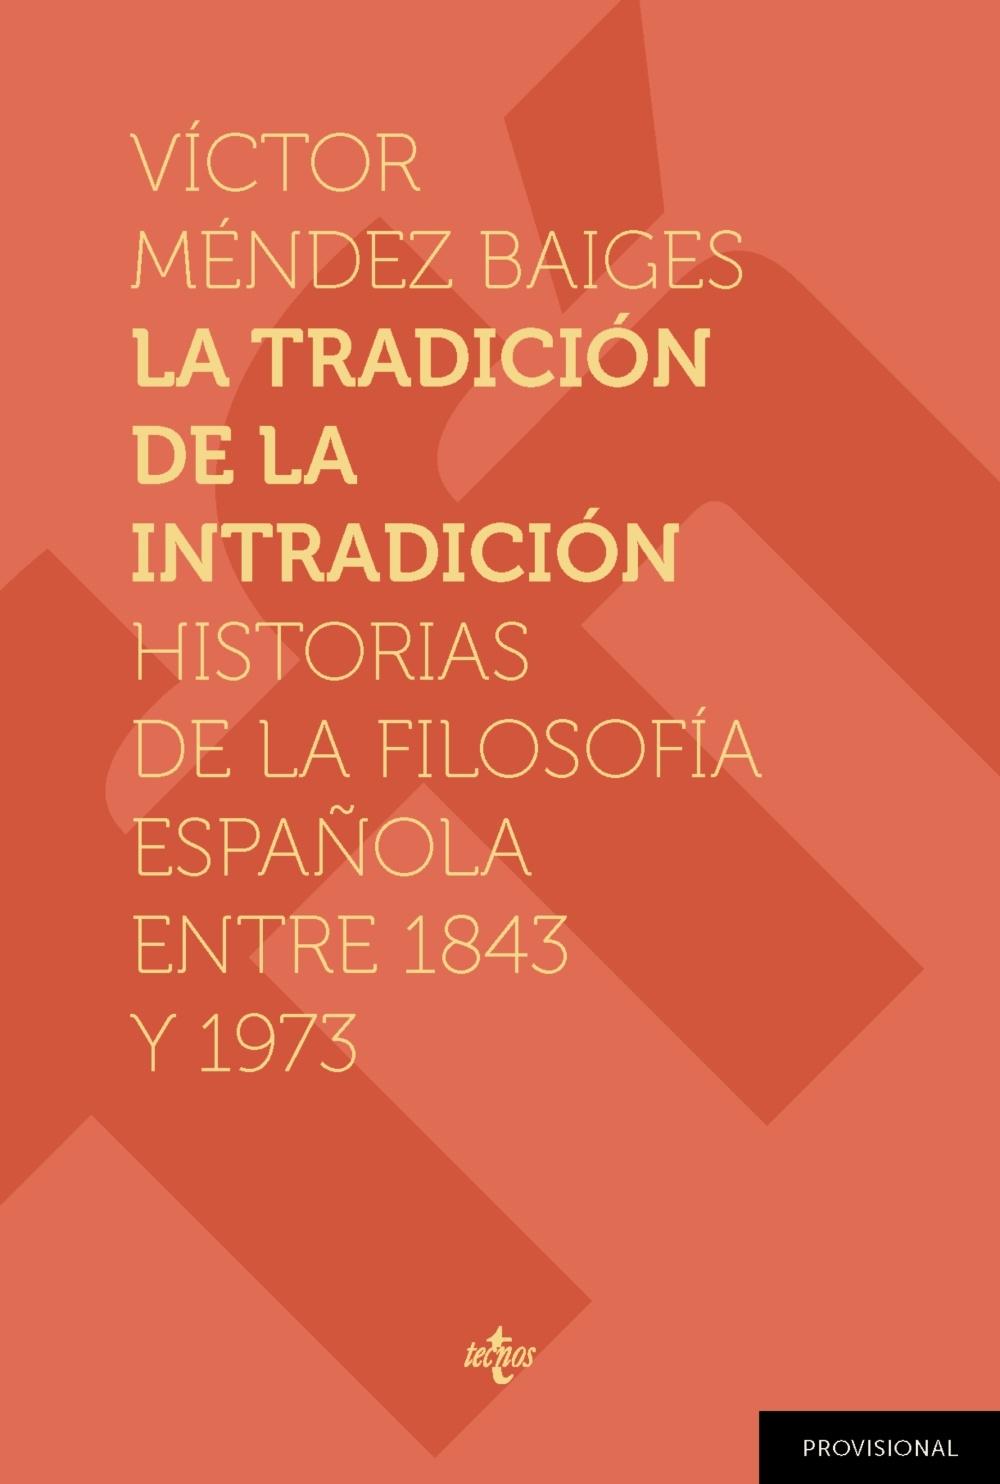 La tradición de la intradición "Historias de la filosofía española entre 1843-1973"